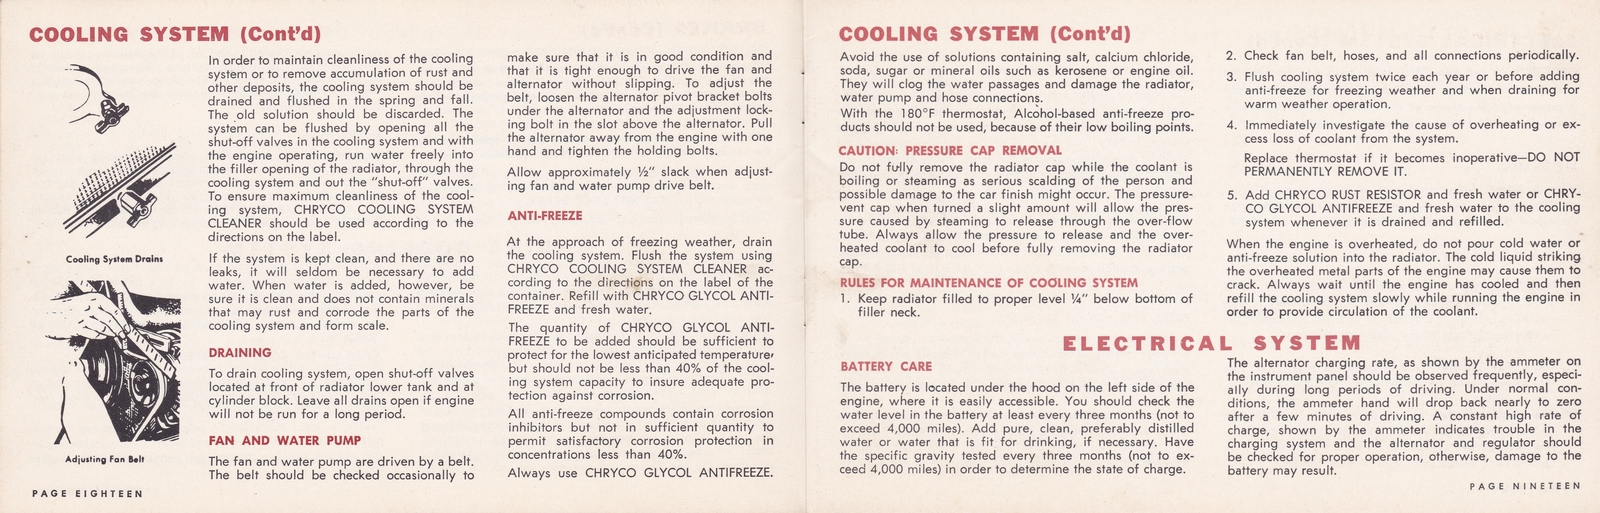 n_1964 Chrysler Owner's Manual (Cdn)-18-19.jpg